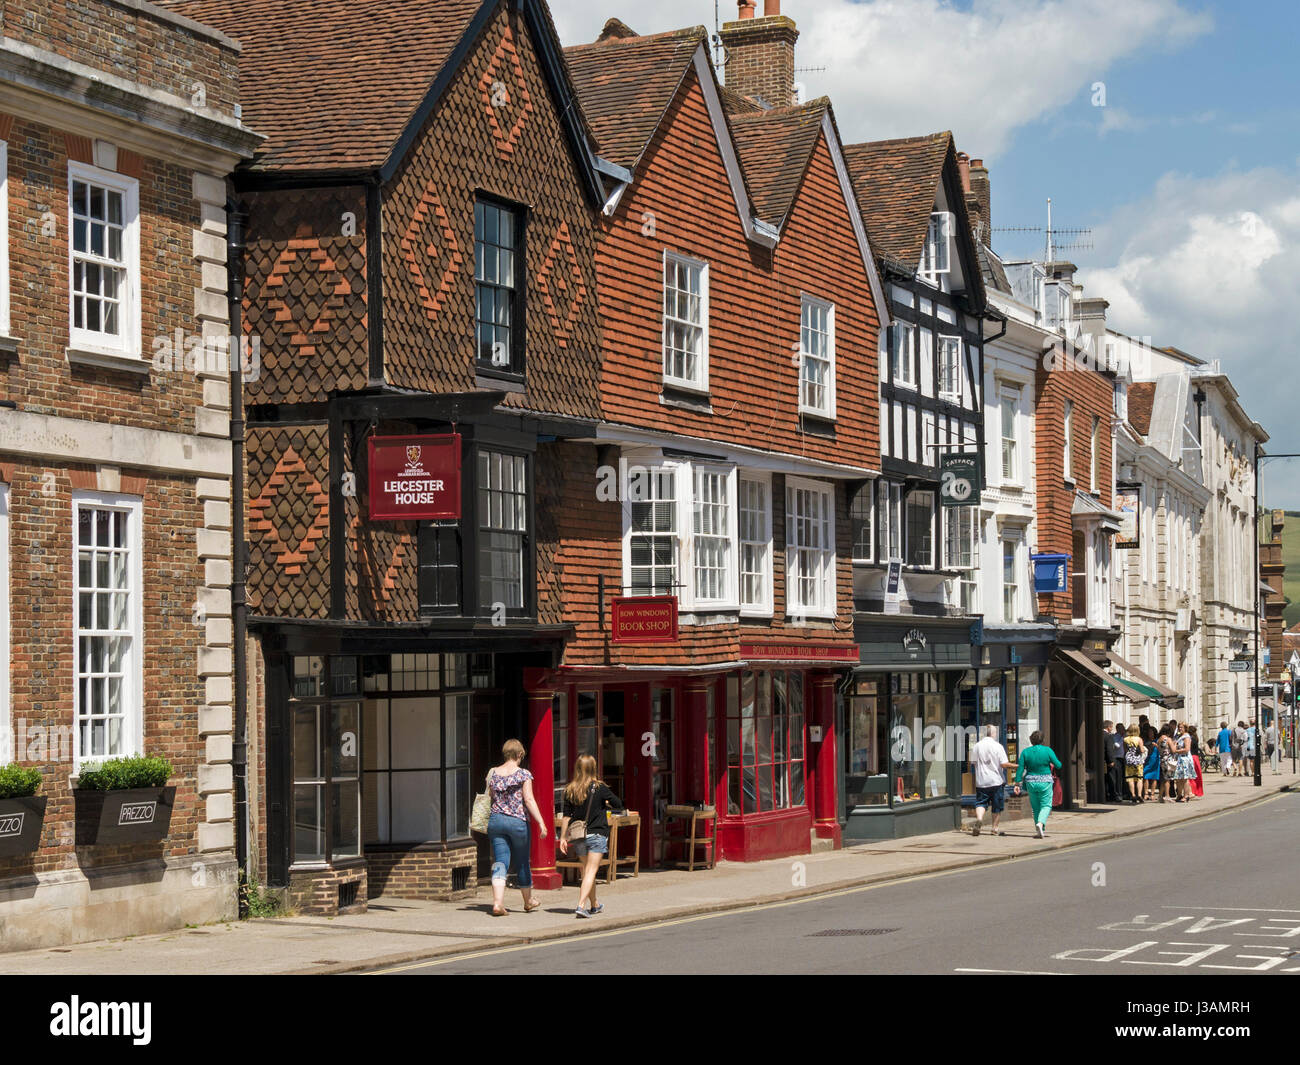 Vieux points traditionnels sur High Street, Lewes, East Sussex, England, UK Banque D'Images